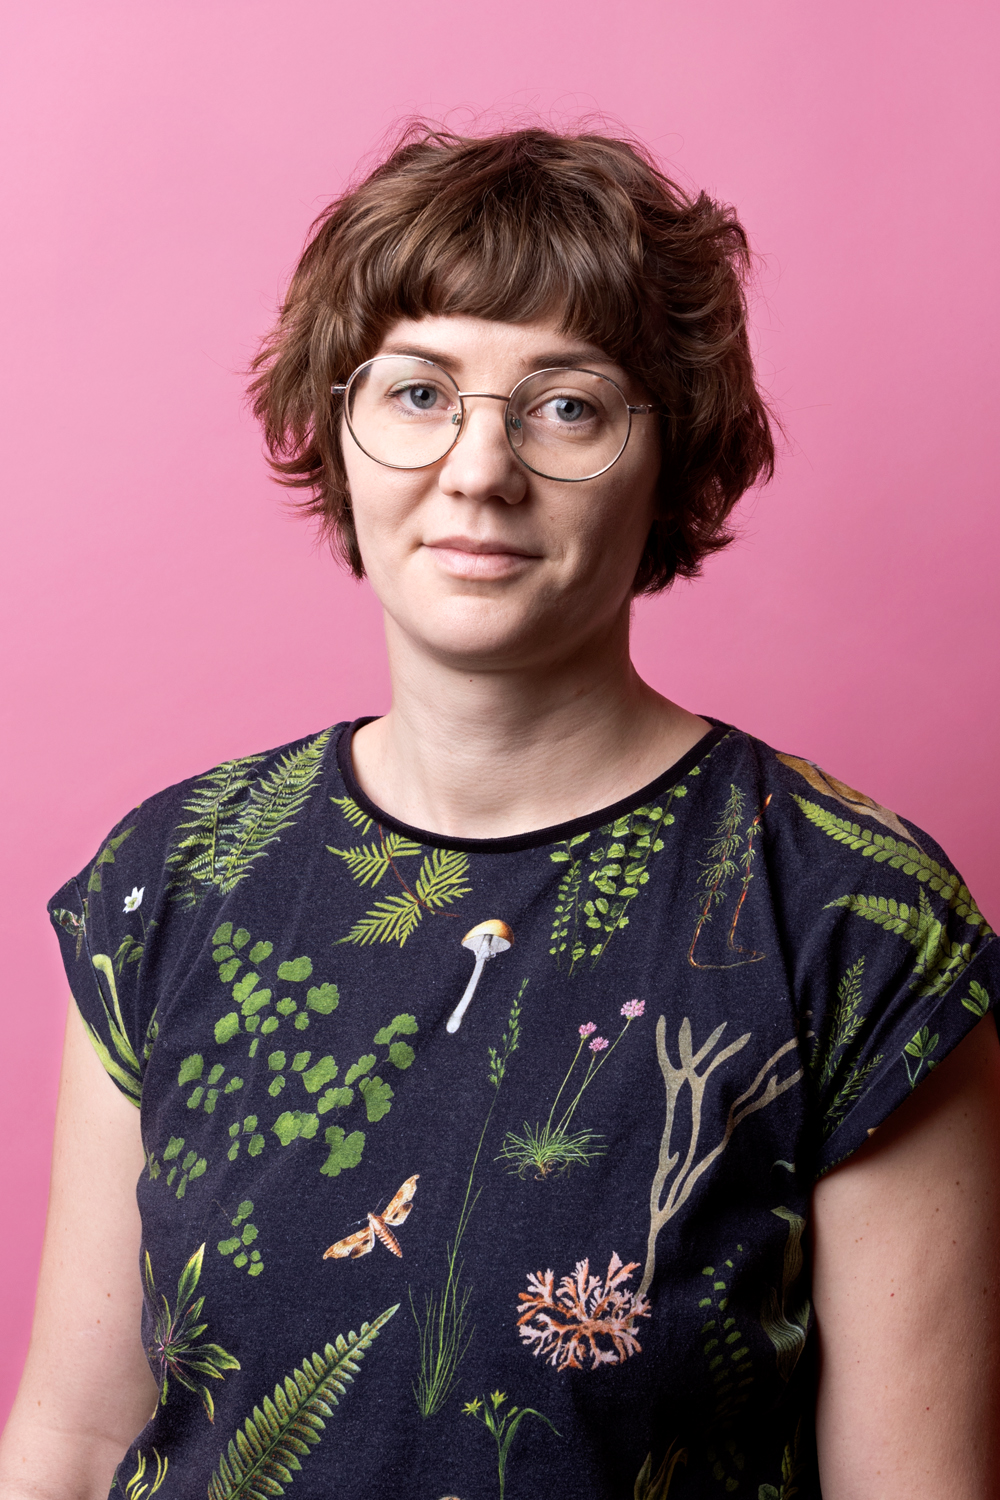 Porträttbild Josefina Linde. Josefina har runda glasögon och bär en mörk tröja med svampar, blad och andra skogsrelaterade saker på.